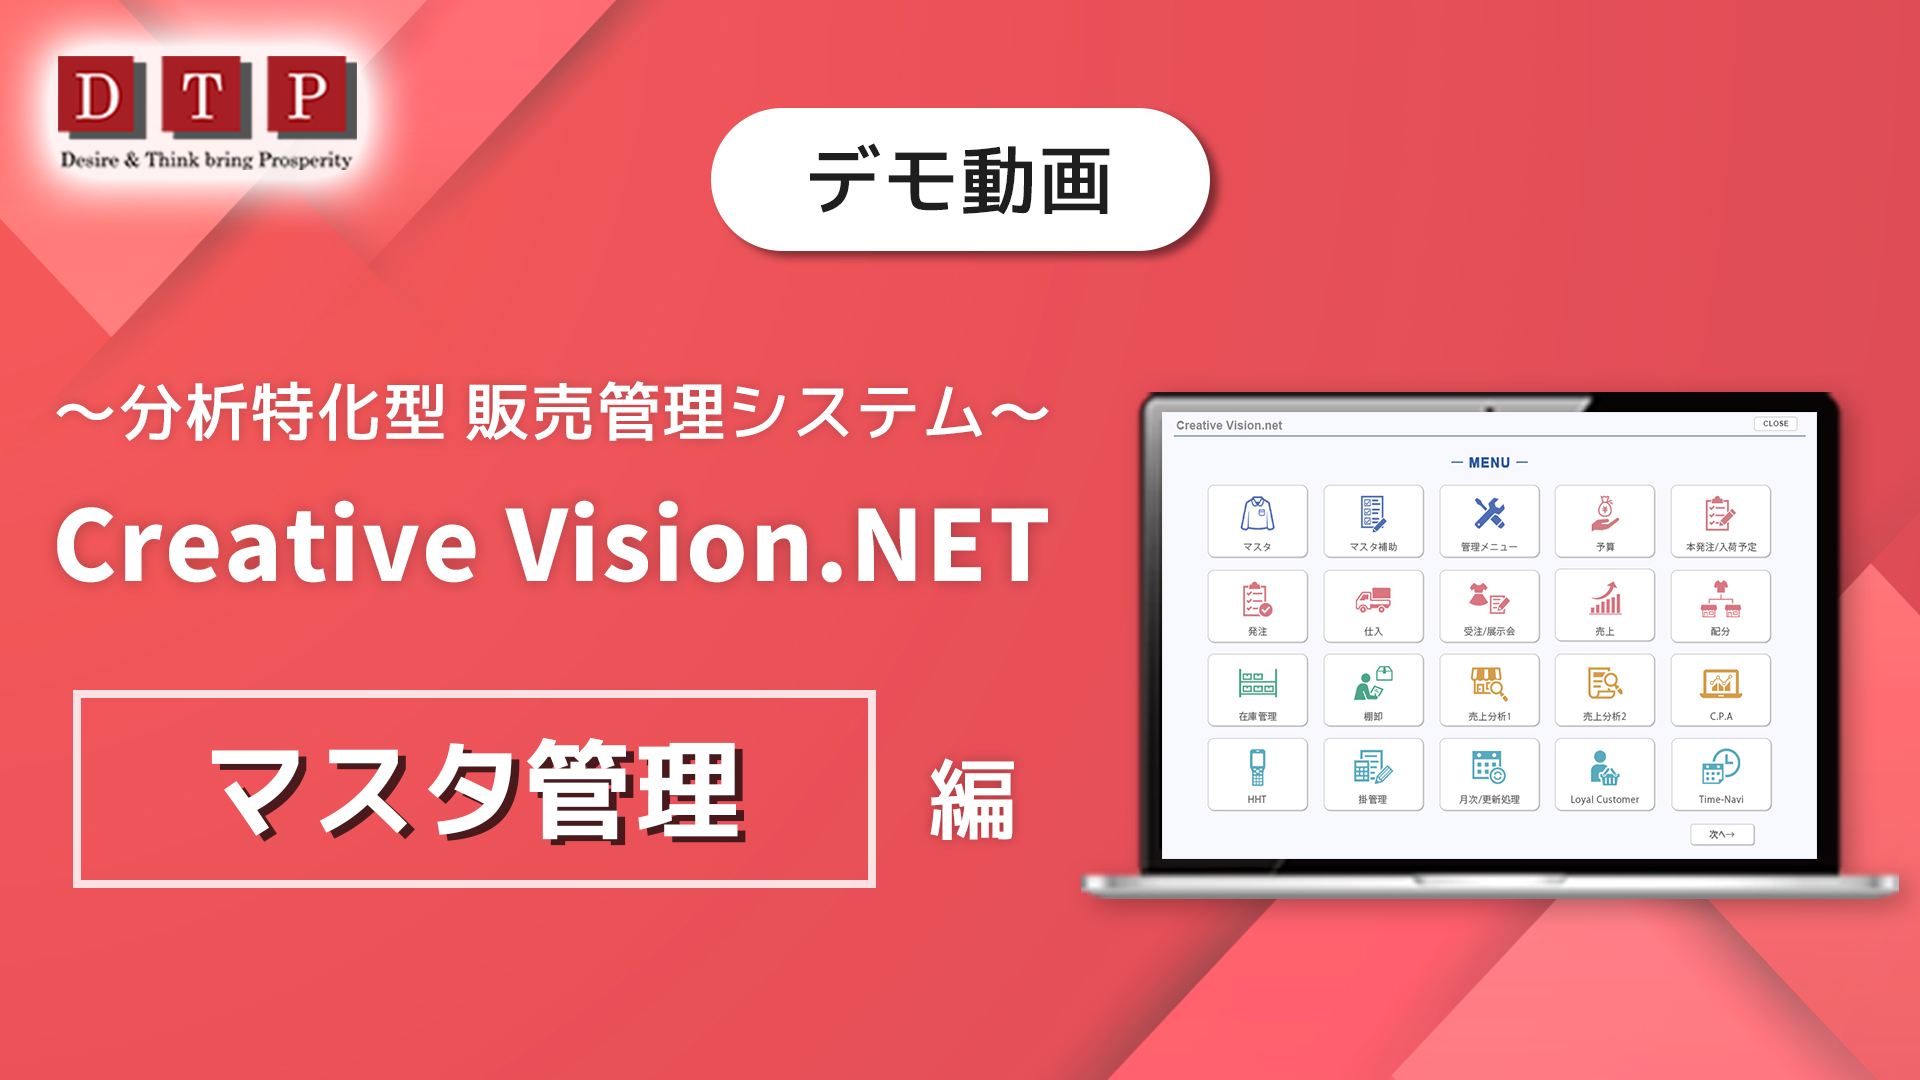 Creative Vision.NET EC売上